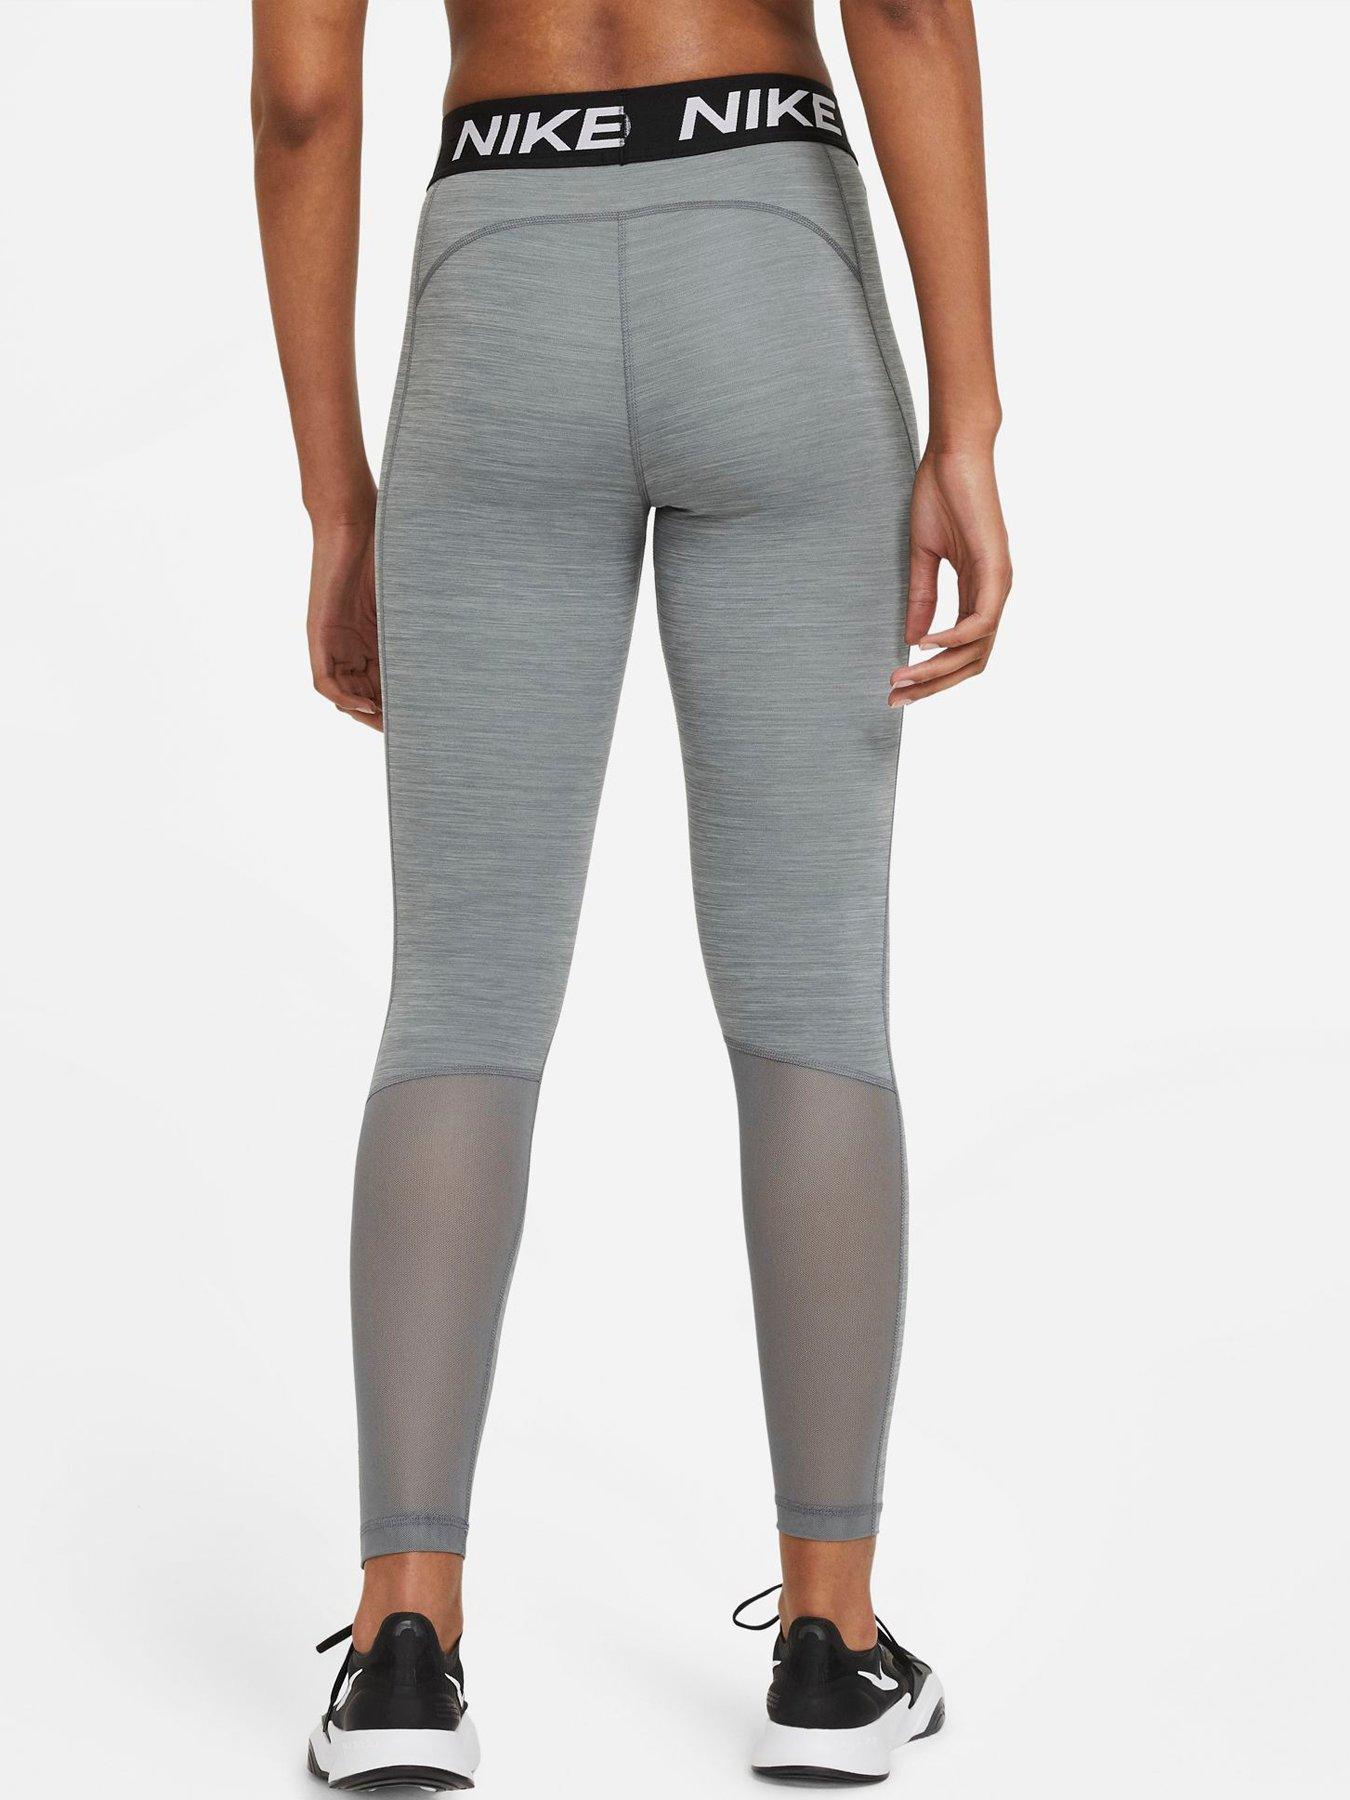 Nike Pro Grey - Woman leggins